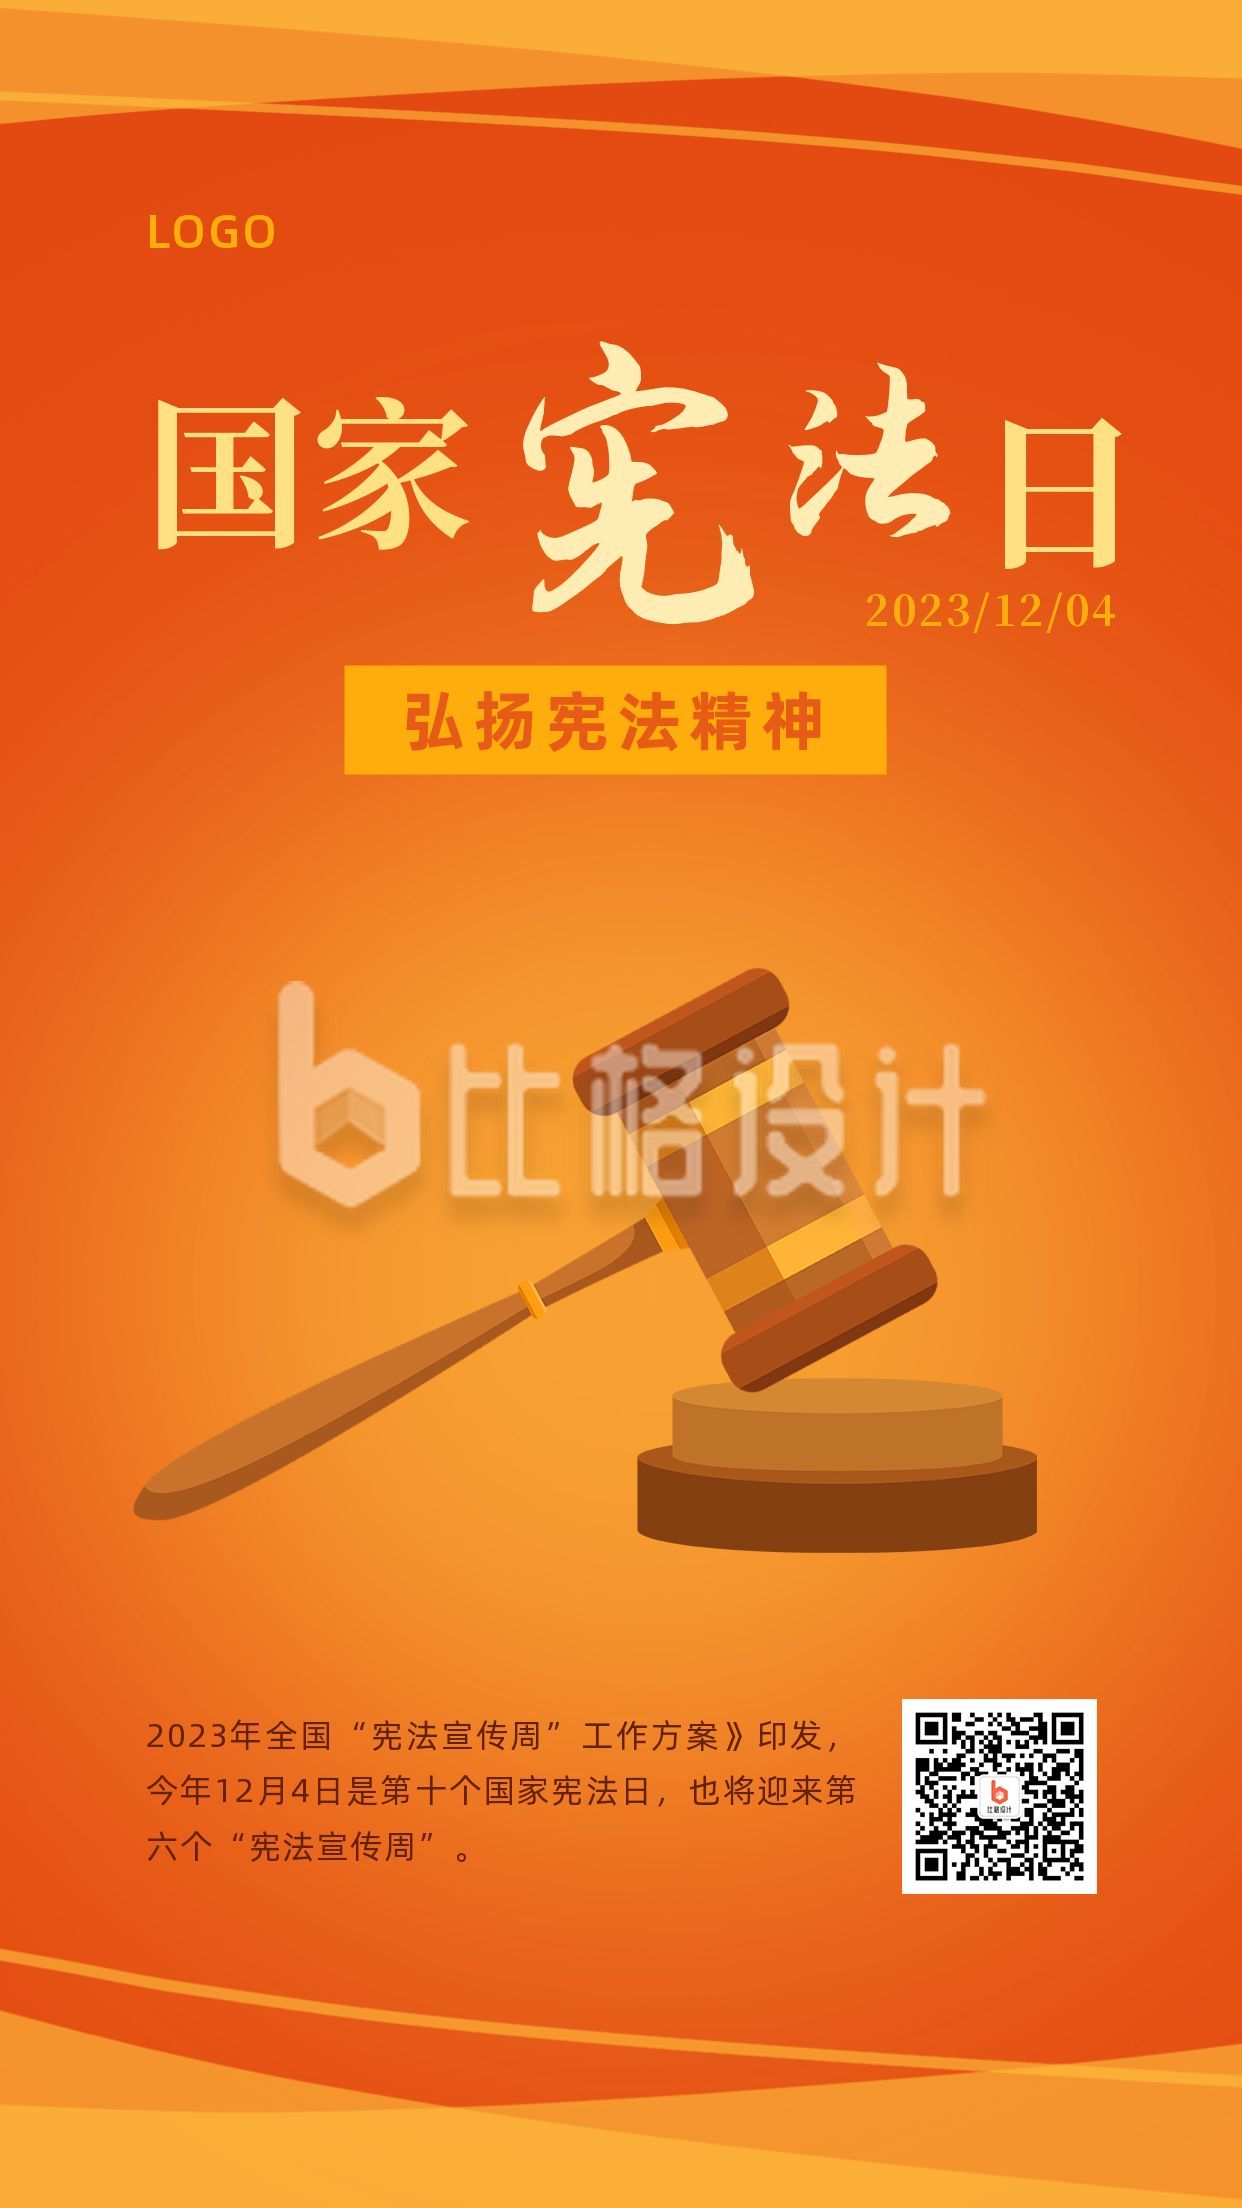 国家宪法日法制宣传法槌橙色法律手机海报